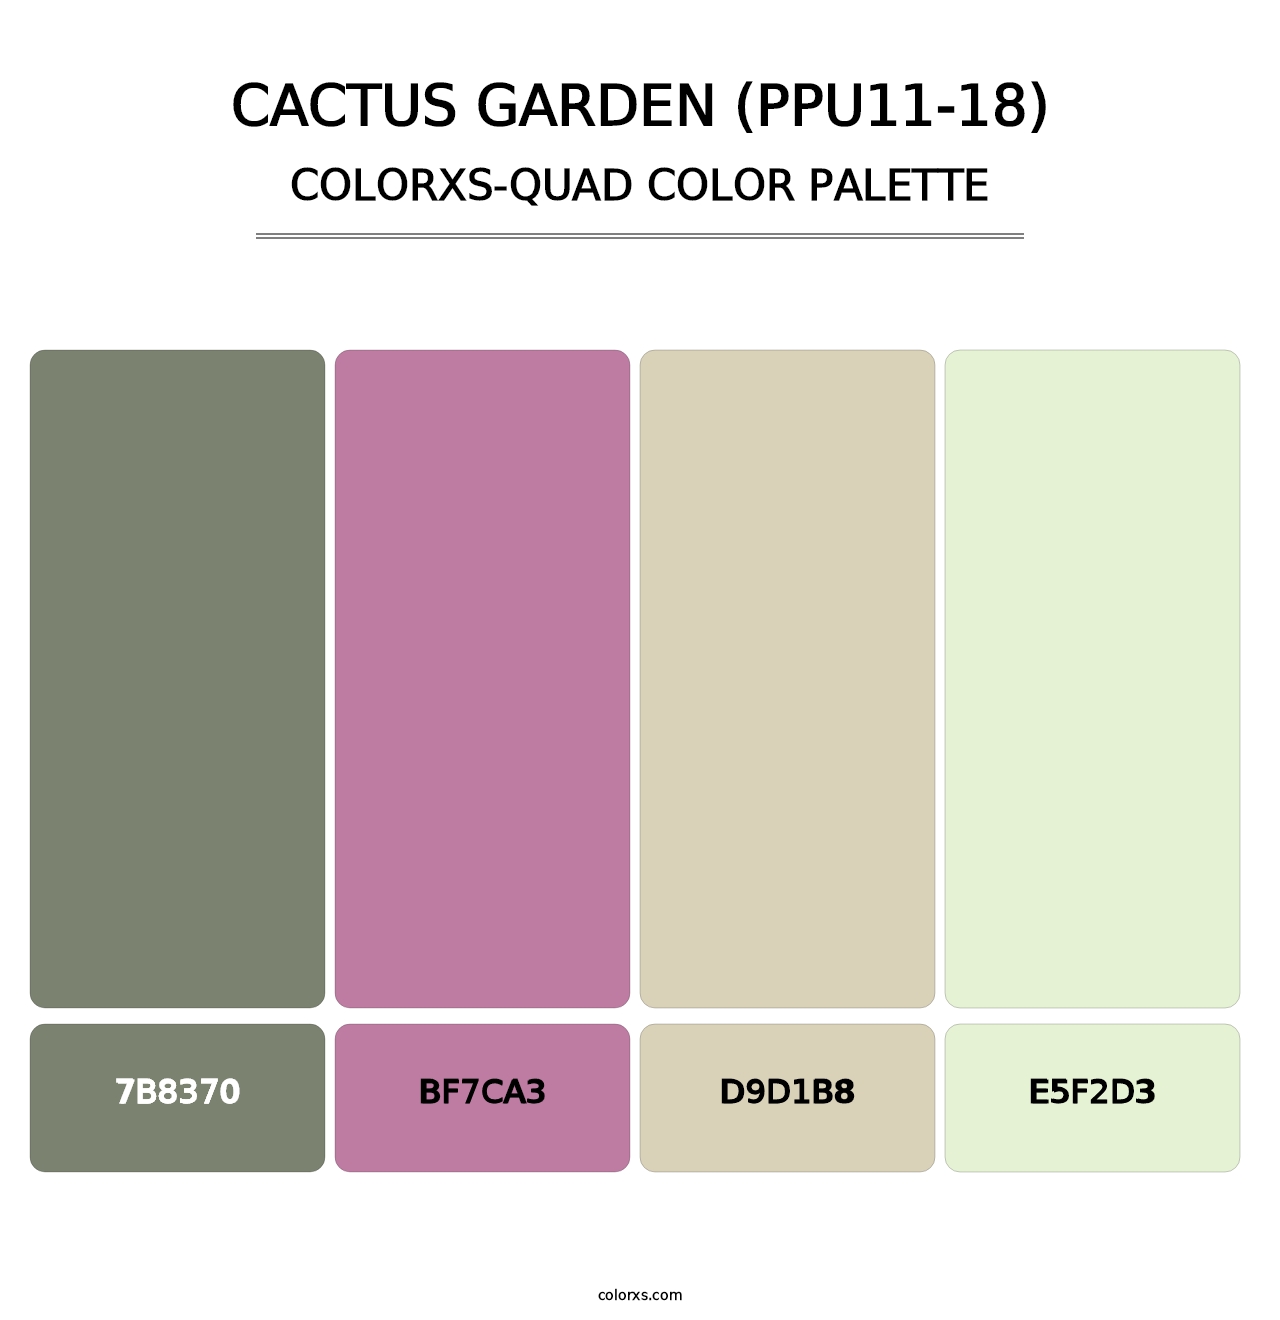 Cactus Garden (PPU11-18) - Colorxs Quad Palette